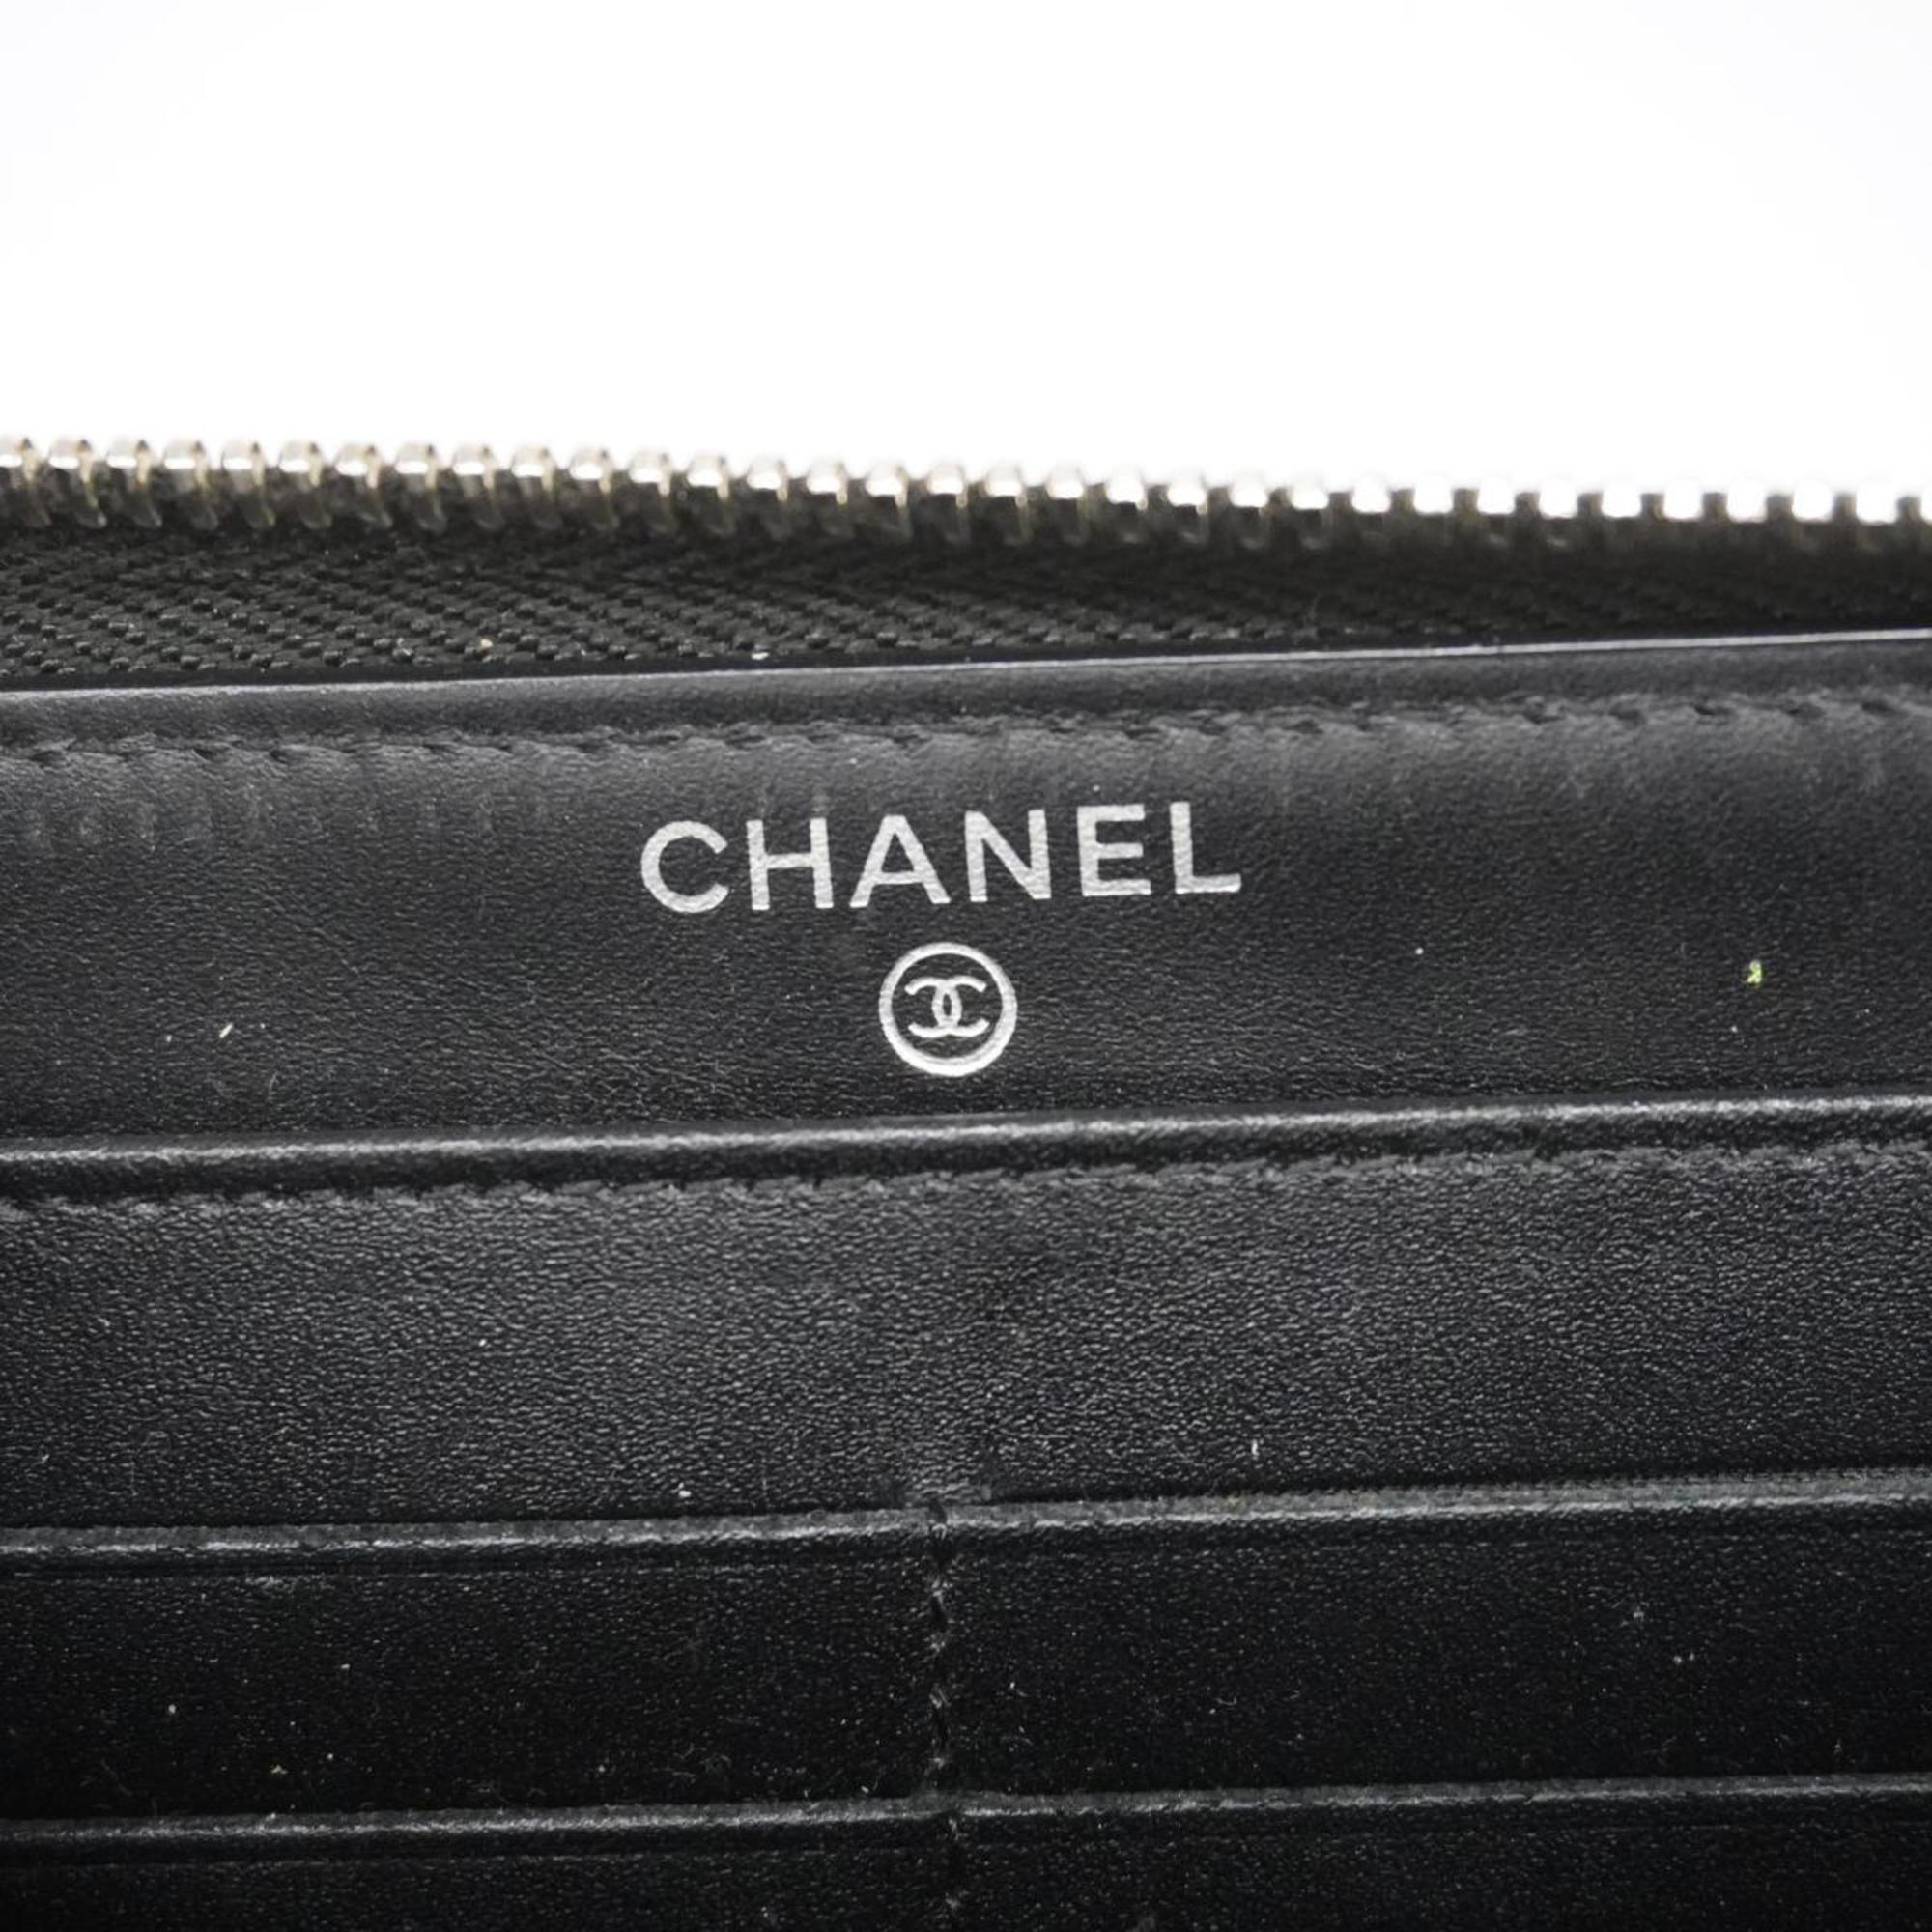 シャネル(Chanel) シャネル 長財布 マトラッセ ブリリアント パテントレザー ブラック   レディース